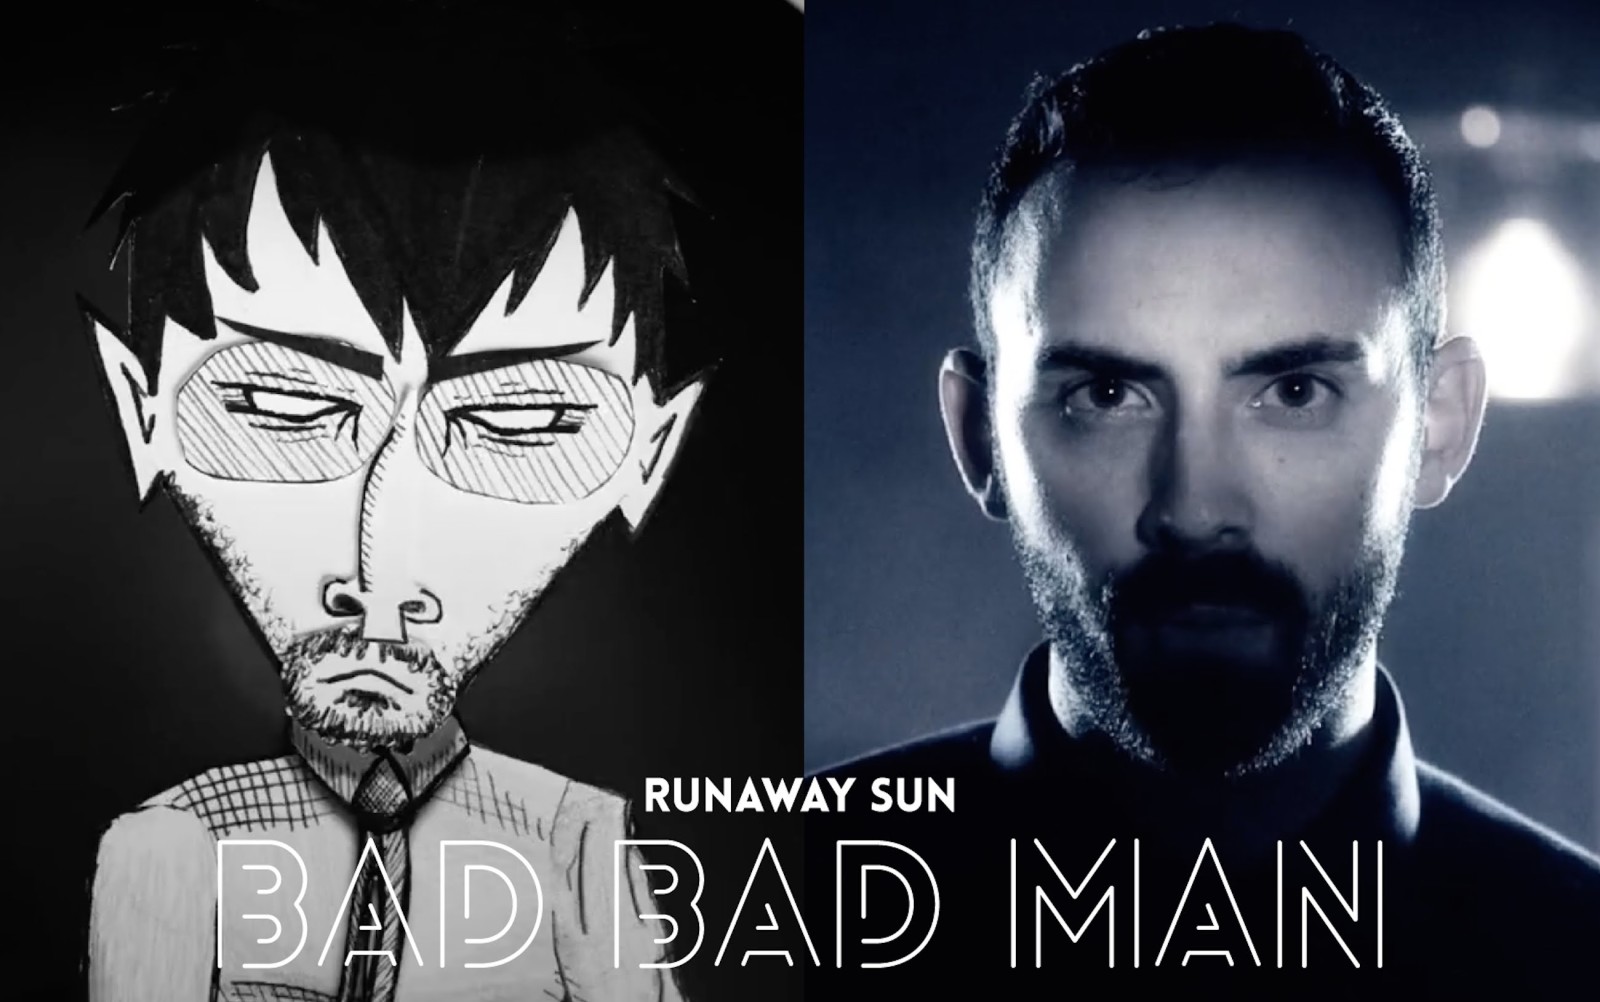 Bad Bad Man by Runaway Sun